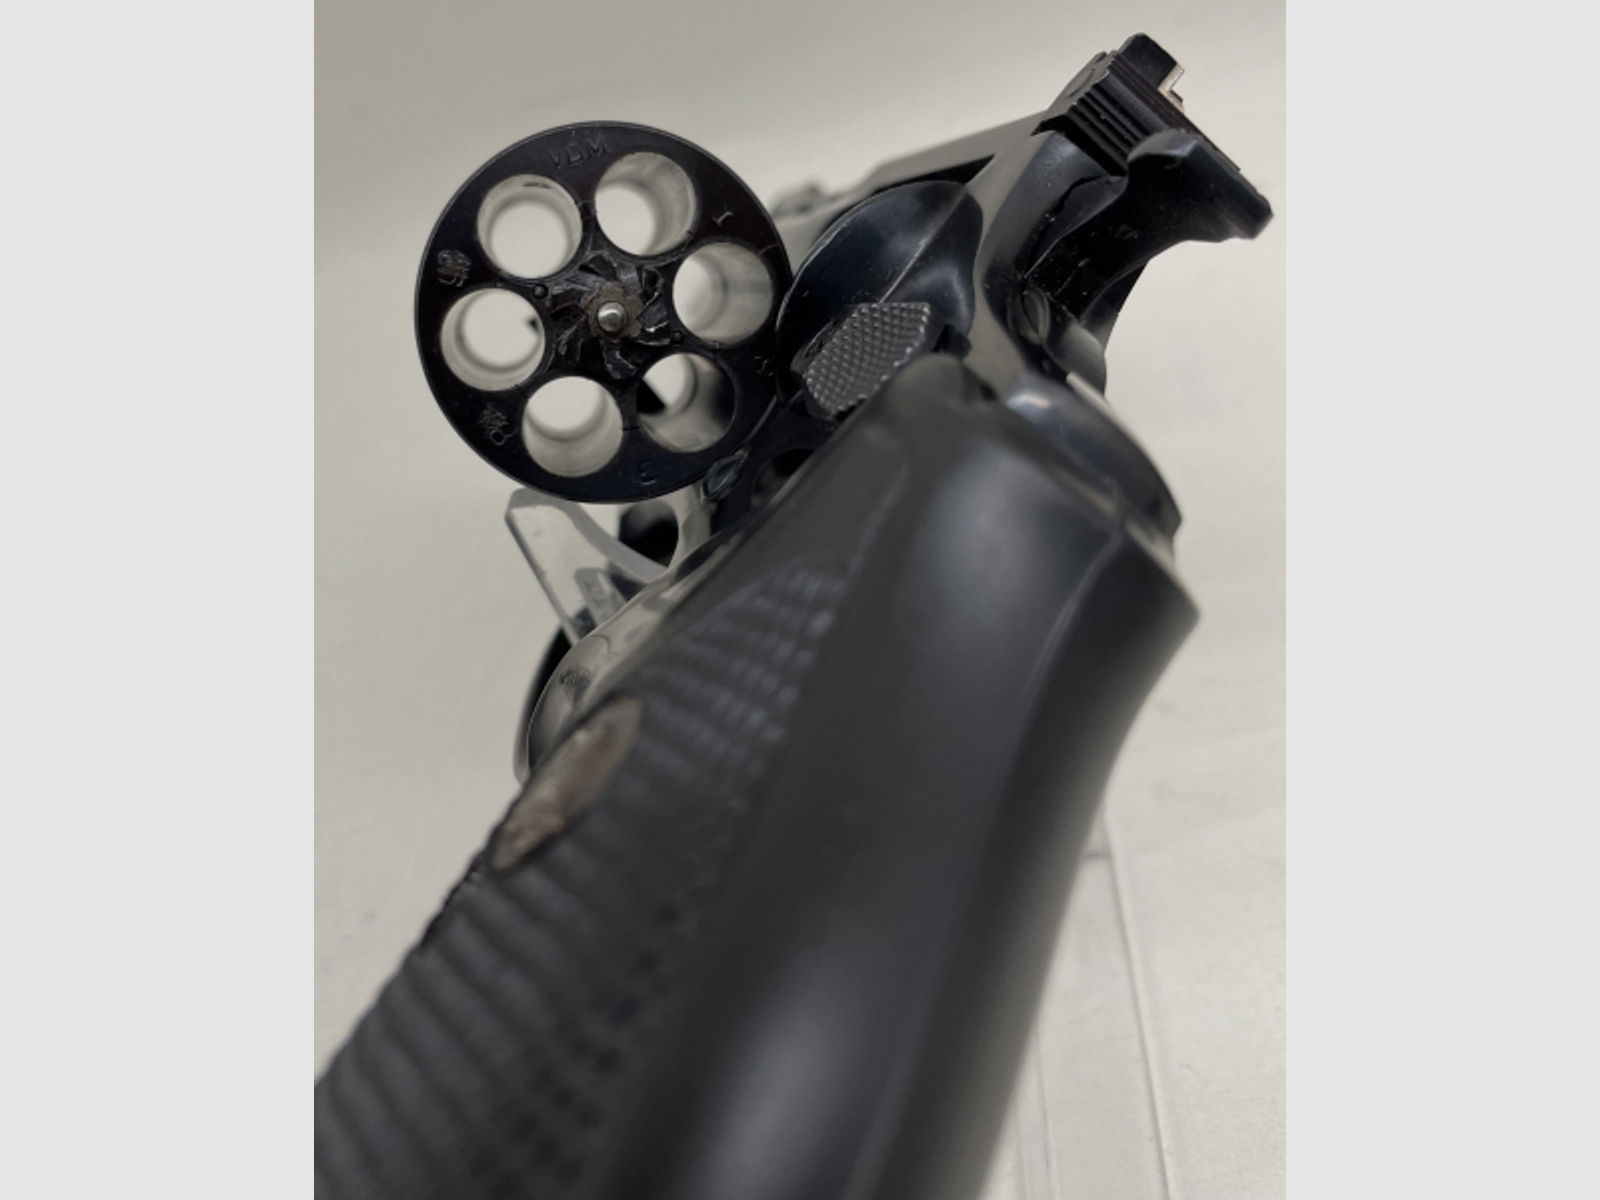 Rossi Revolver Mod. 951 4" Kal. 38Spez.